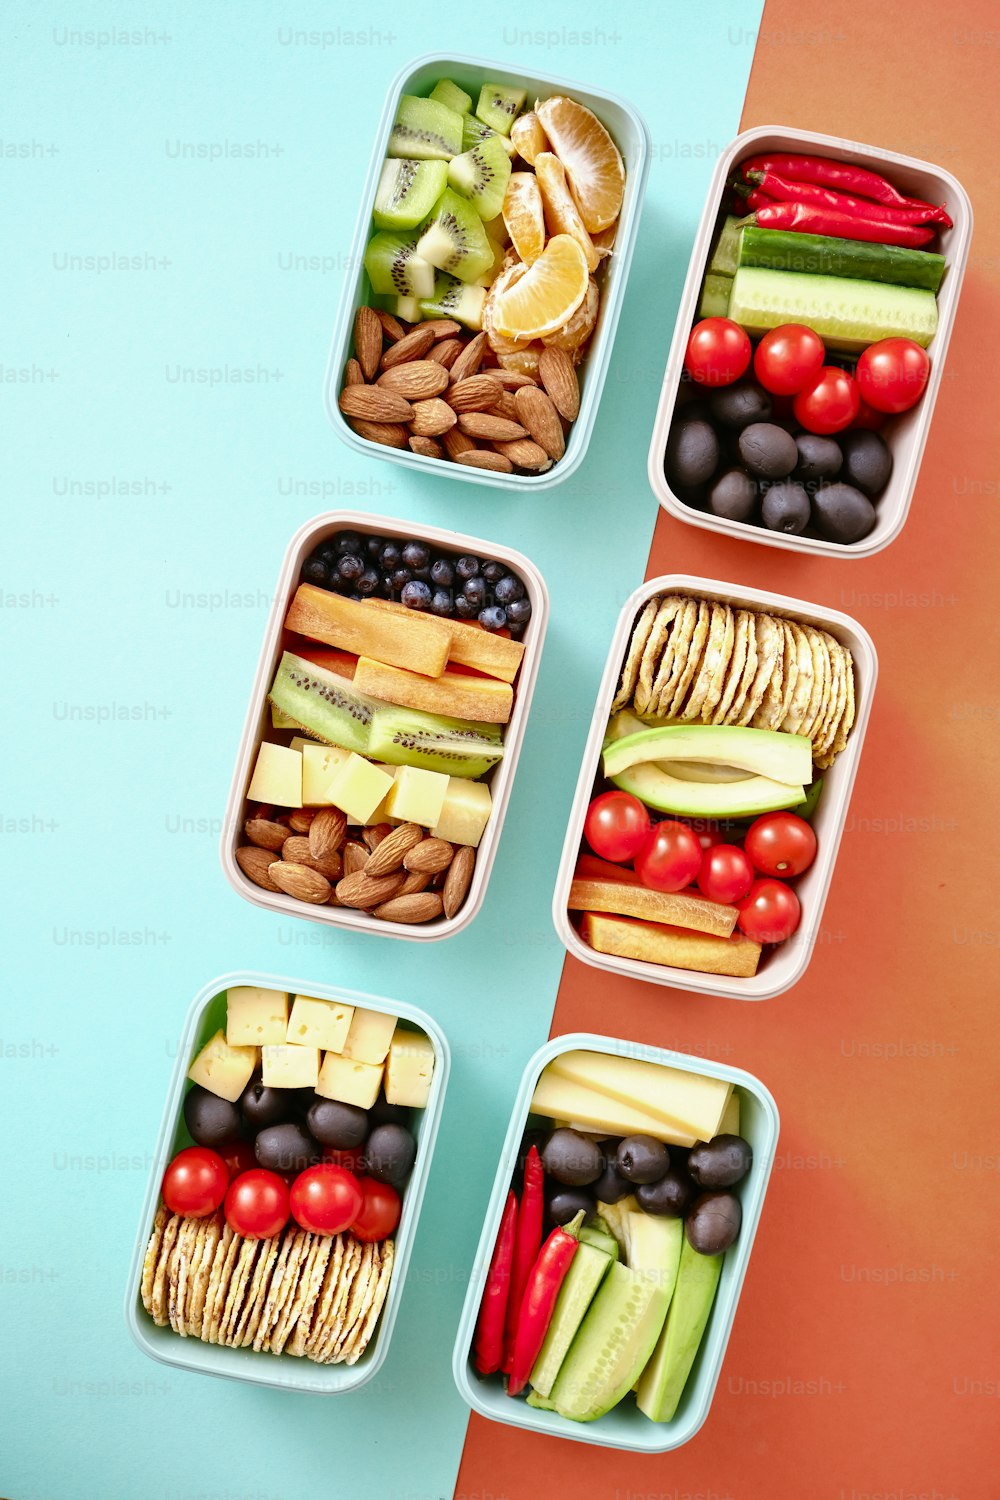 Cuatro recipientes de plástico llenos de frutas y verduras variadas